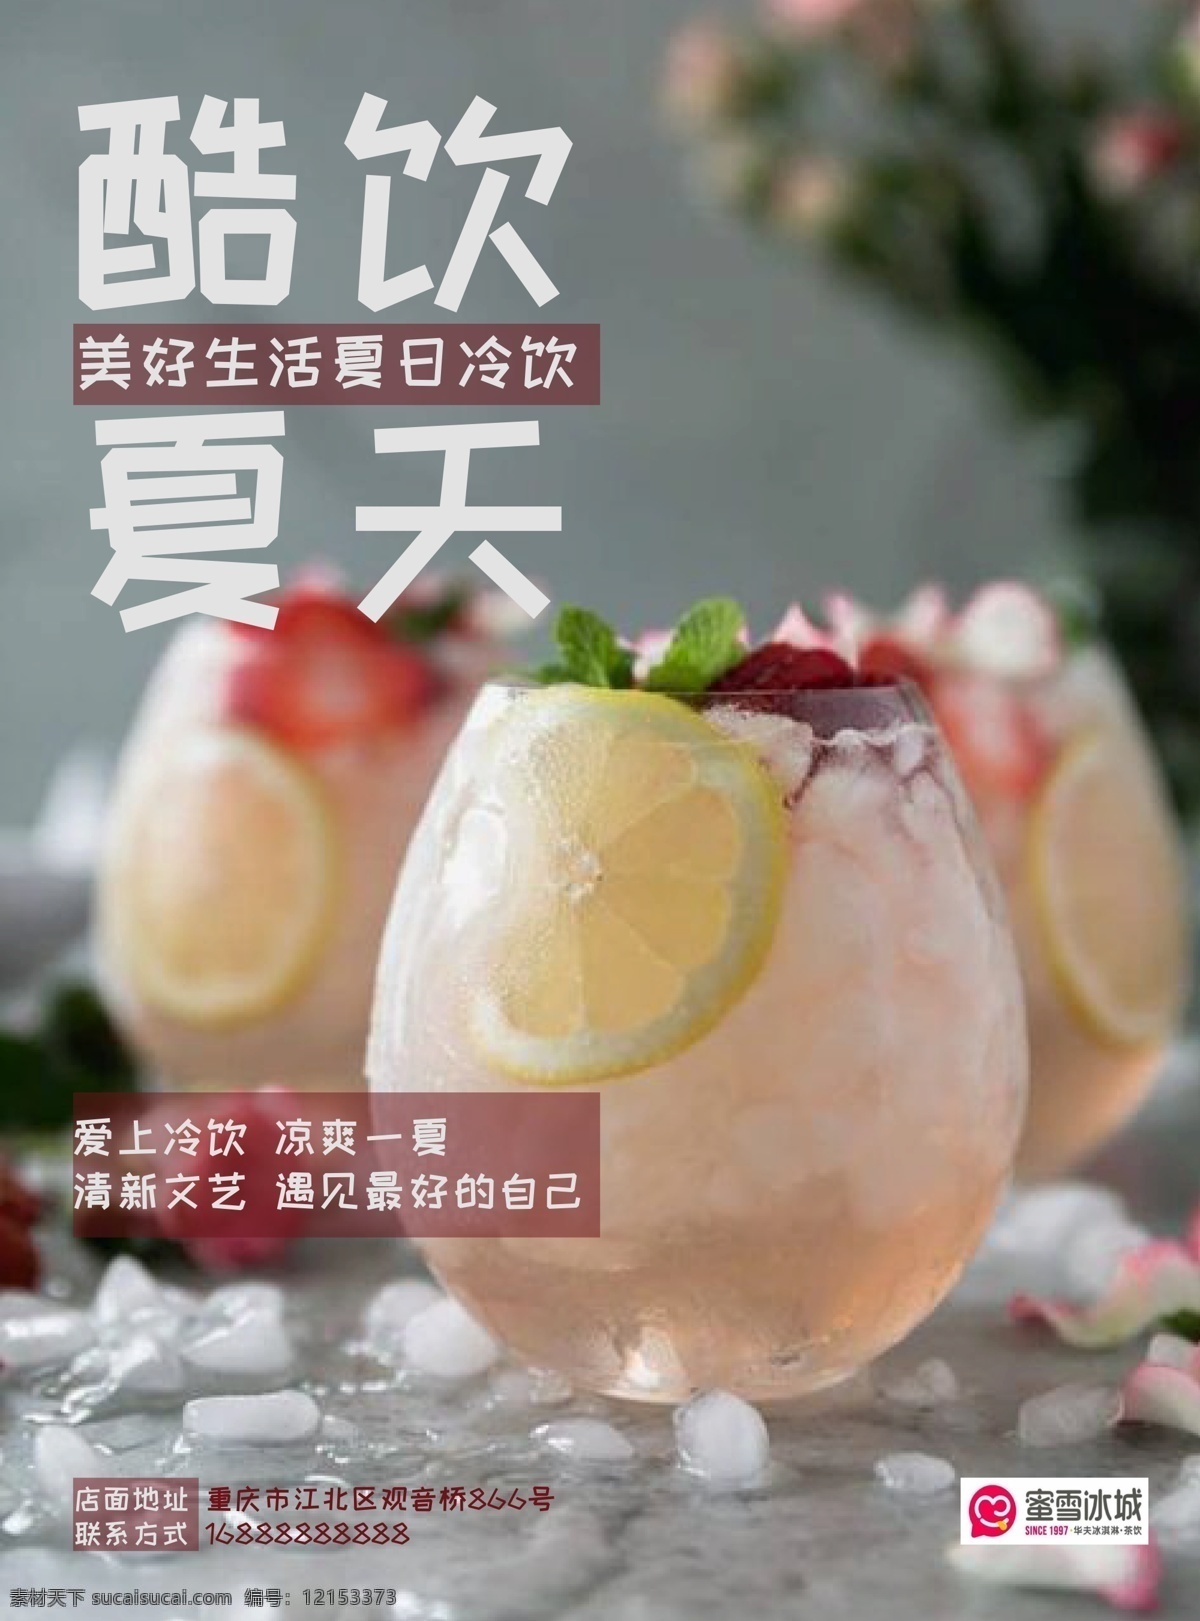 酷 饮 夏天 冷饮 宣传海报 汽水 水果茶 气泡水 宣传 海报 饮食 排版